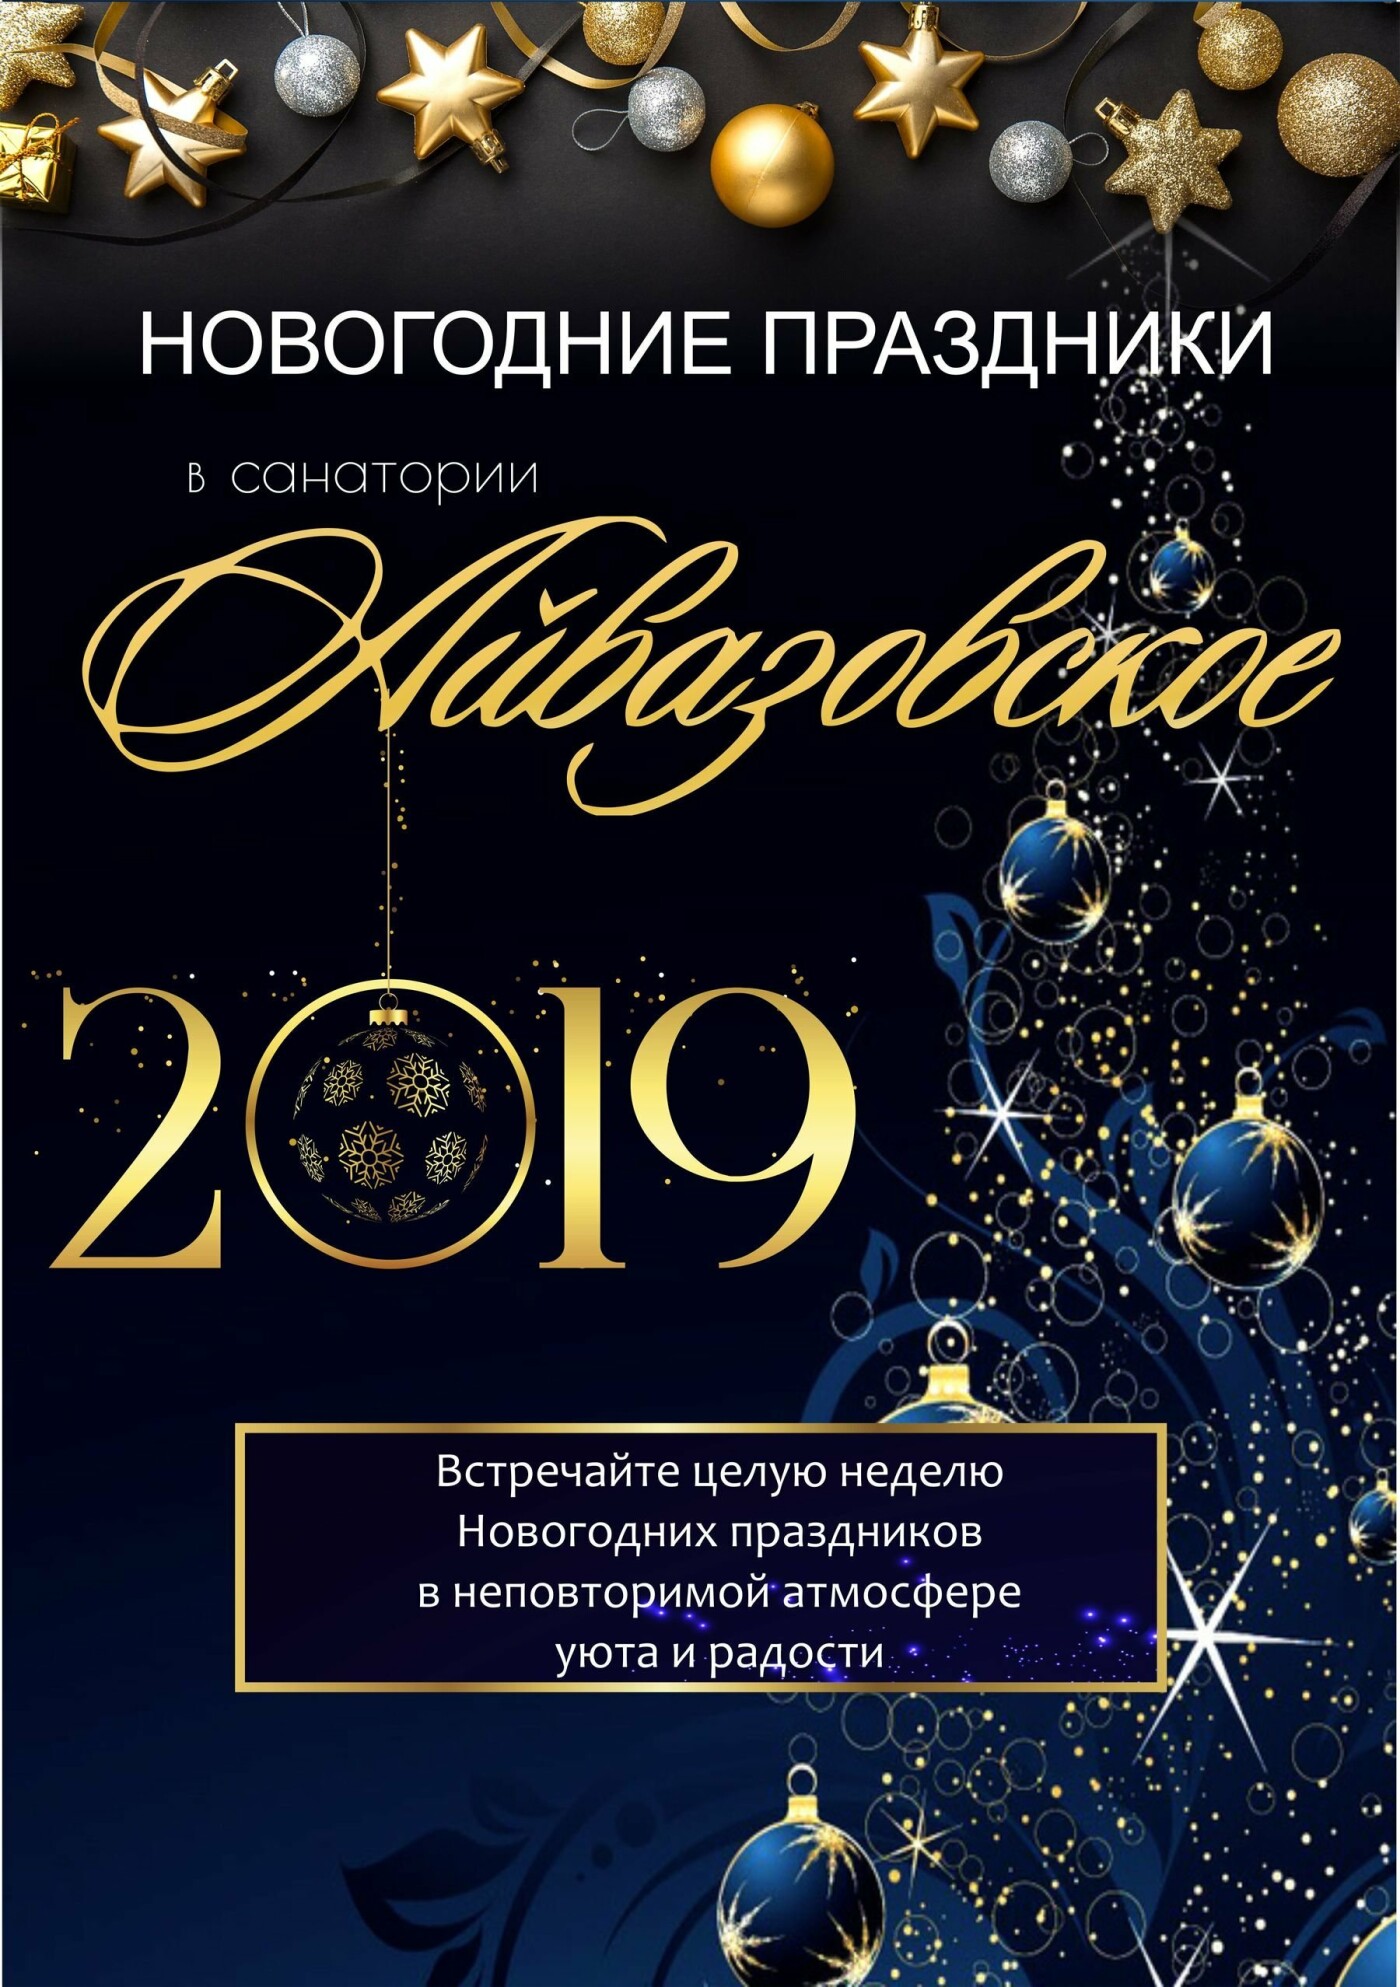 Встречайте Новый год-2019 всей семьей в санатории «Айвазовское»!, фото-1